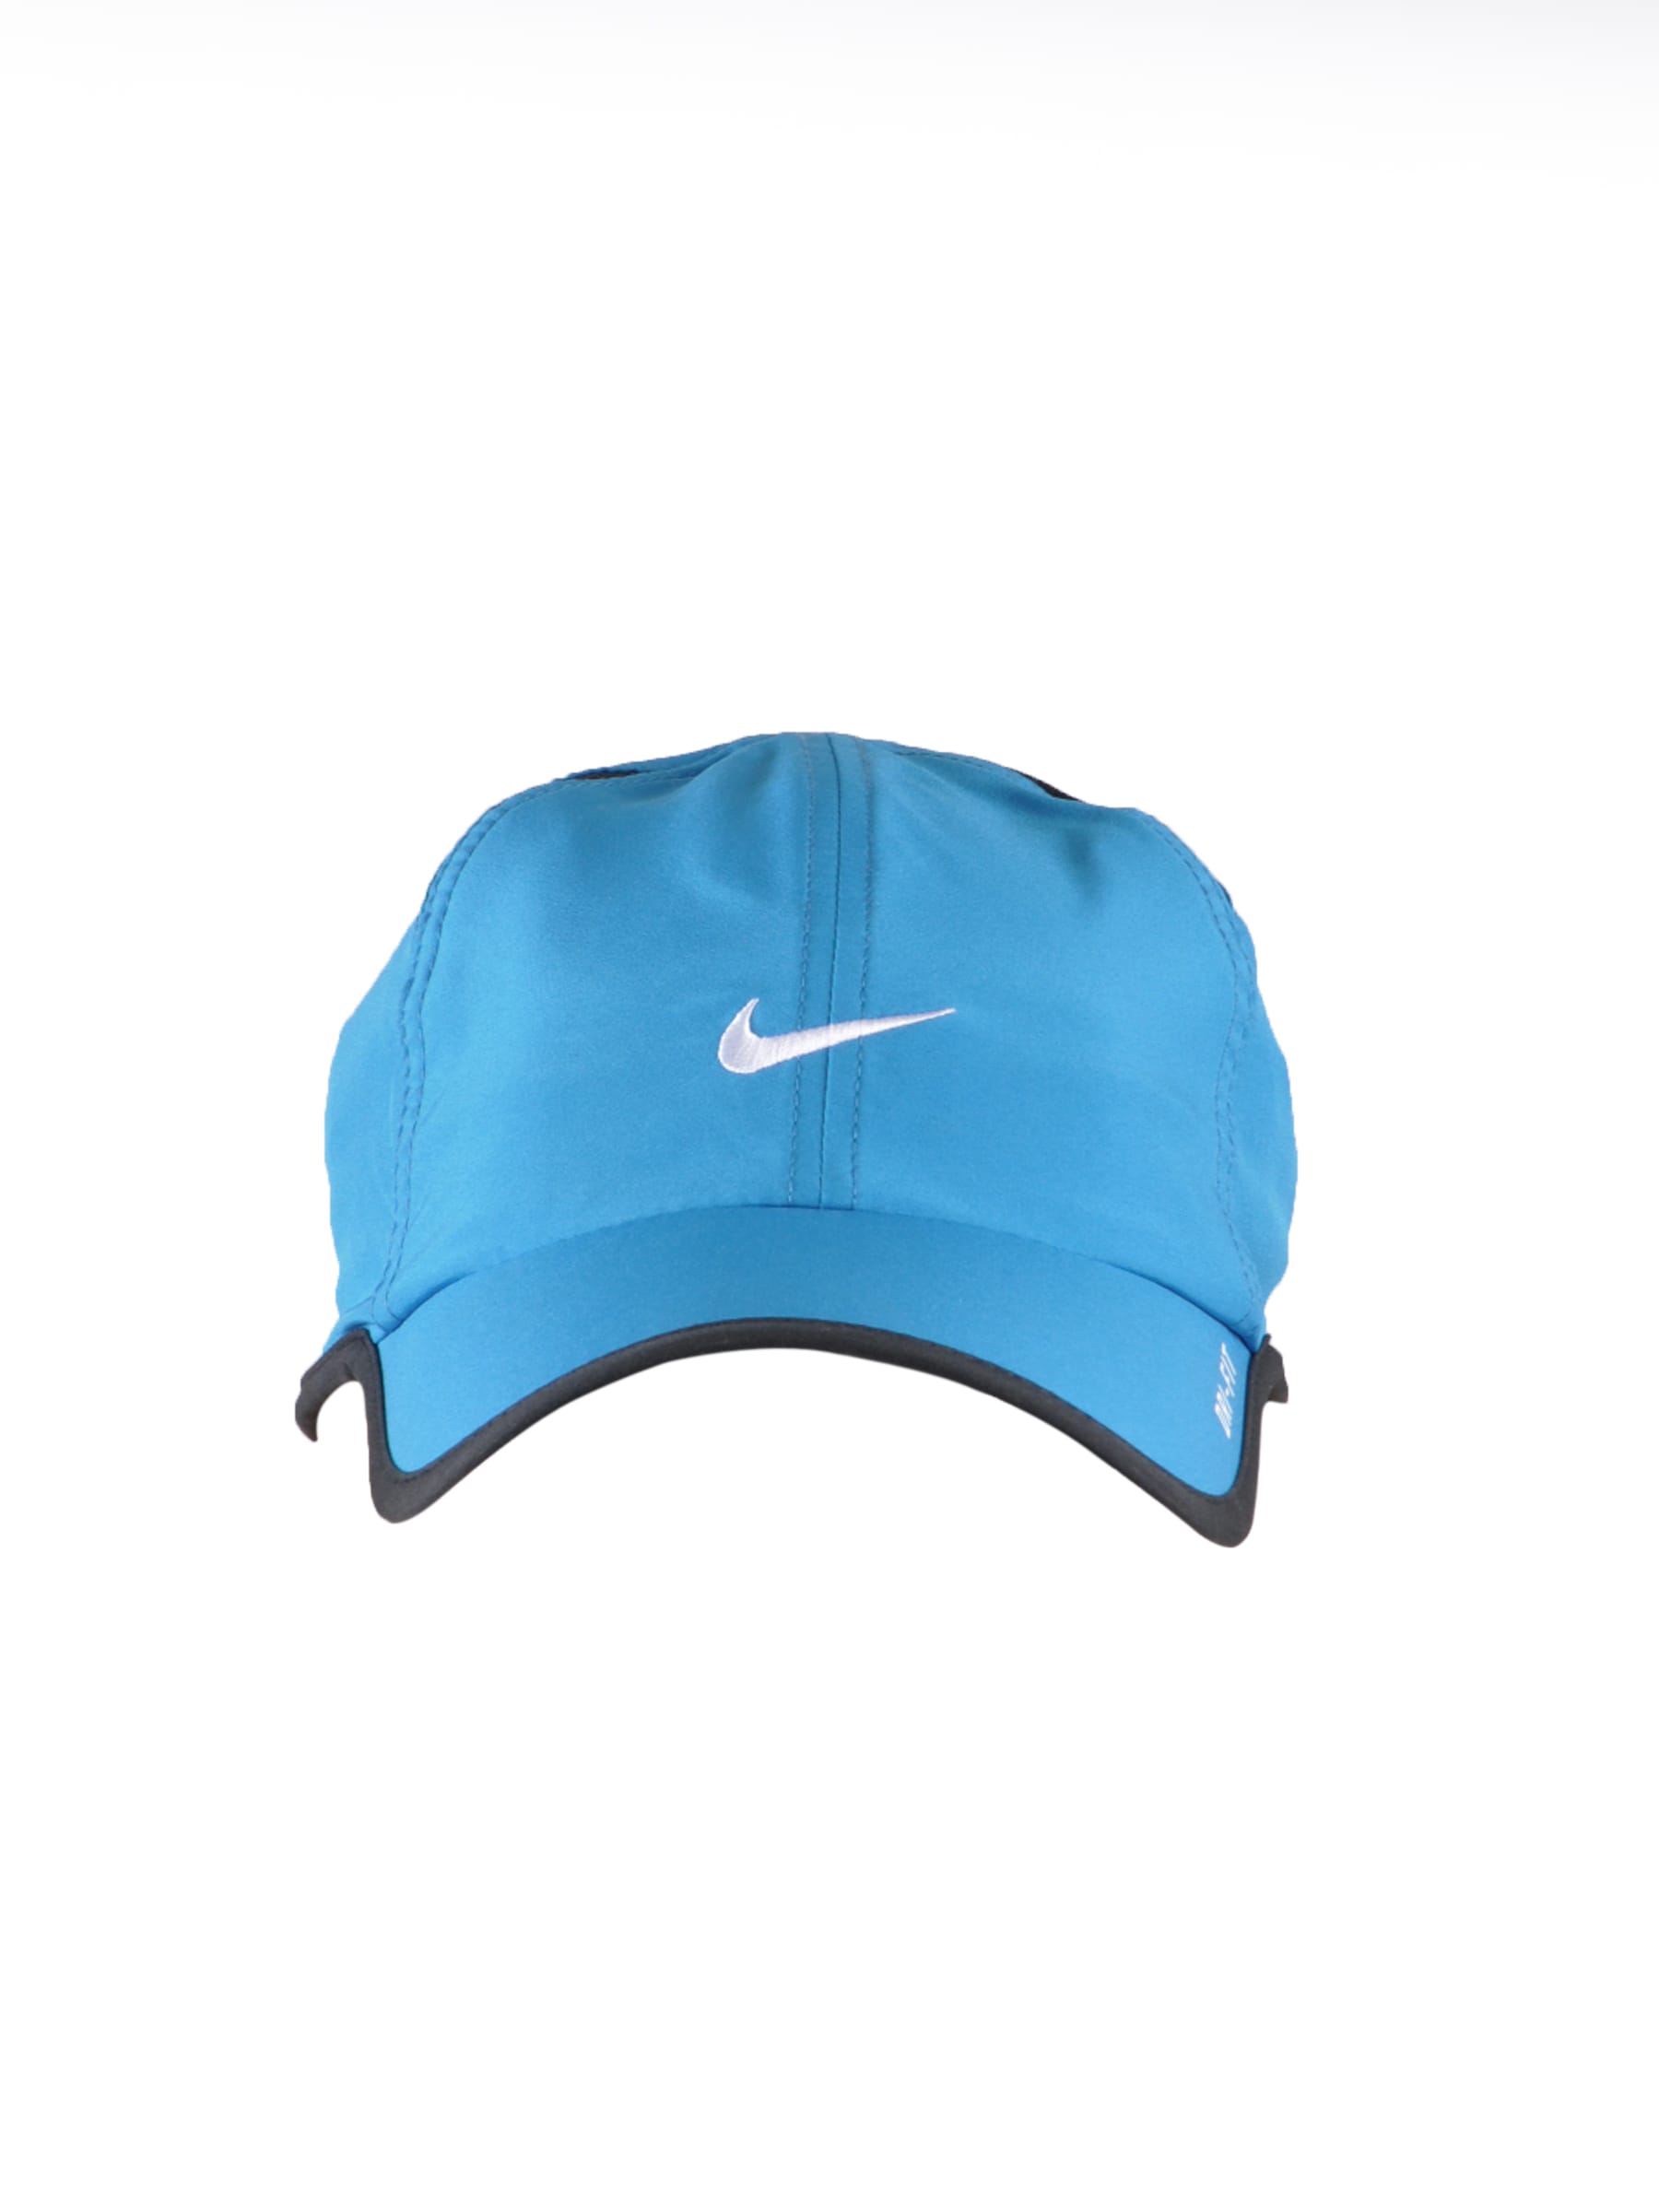 Nike Unisex Blue Tennis Cap